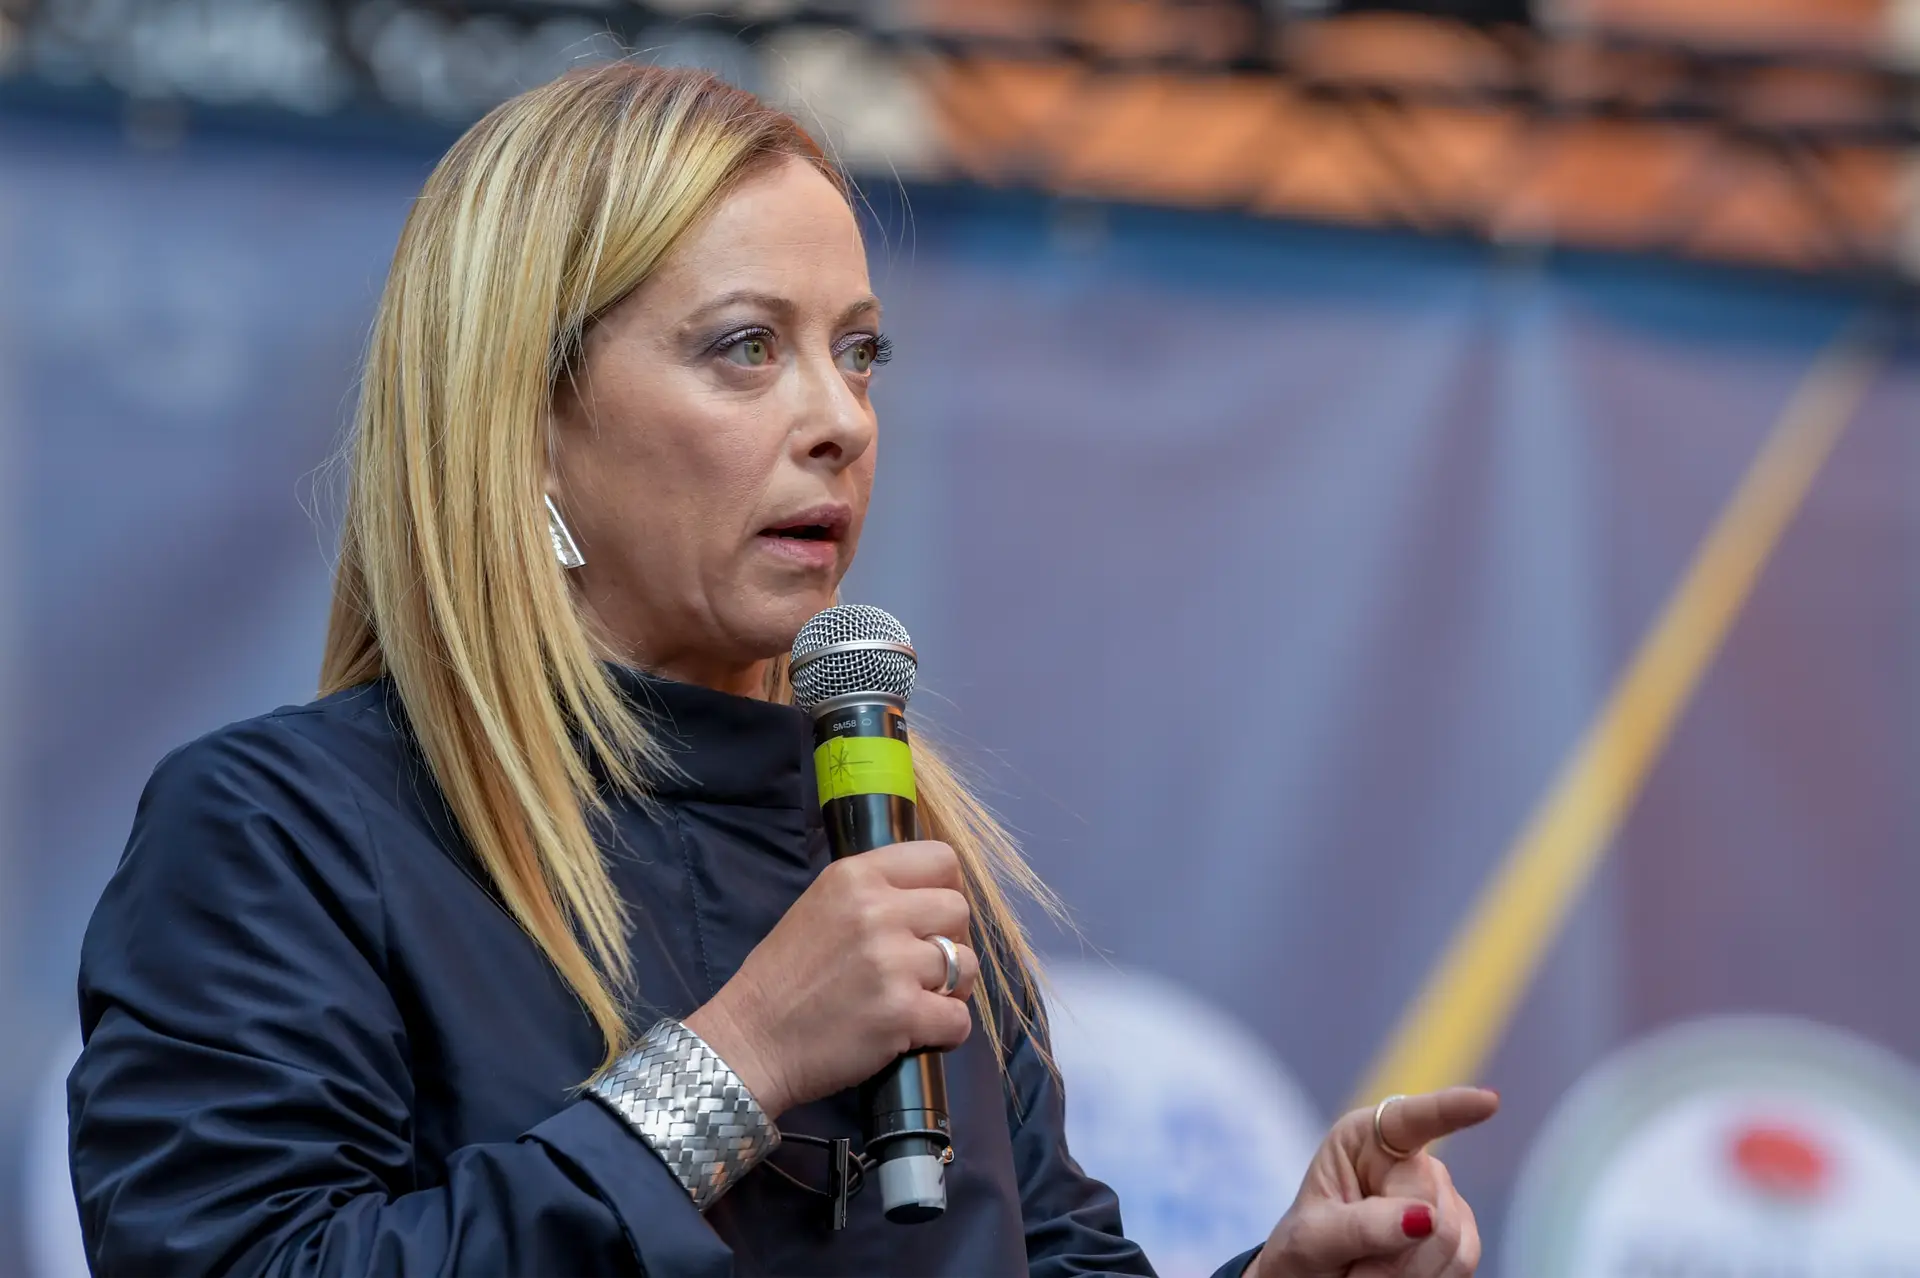 Candidata da extrema-direita italiana choca opositores ao partilhar vídeo de alegada violação